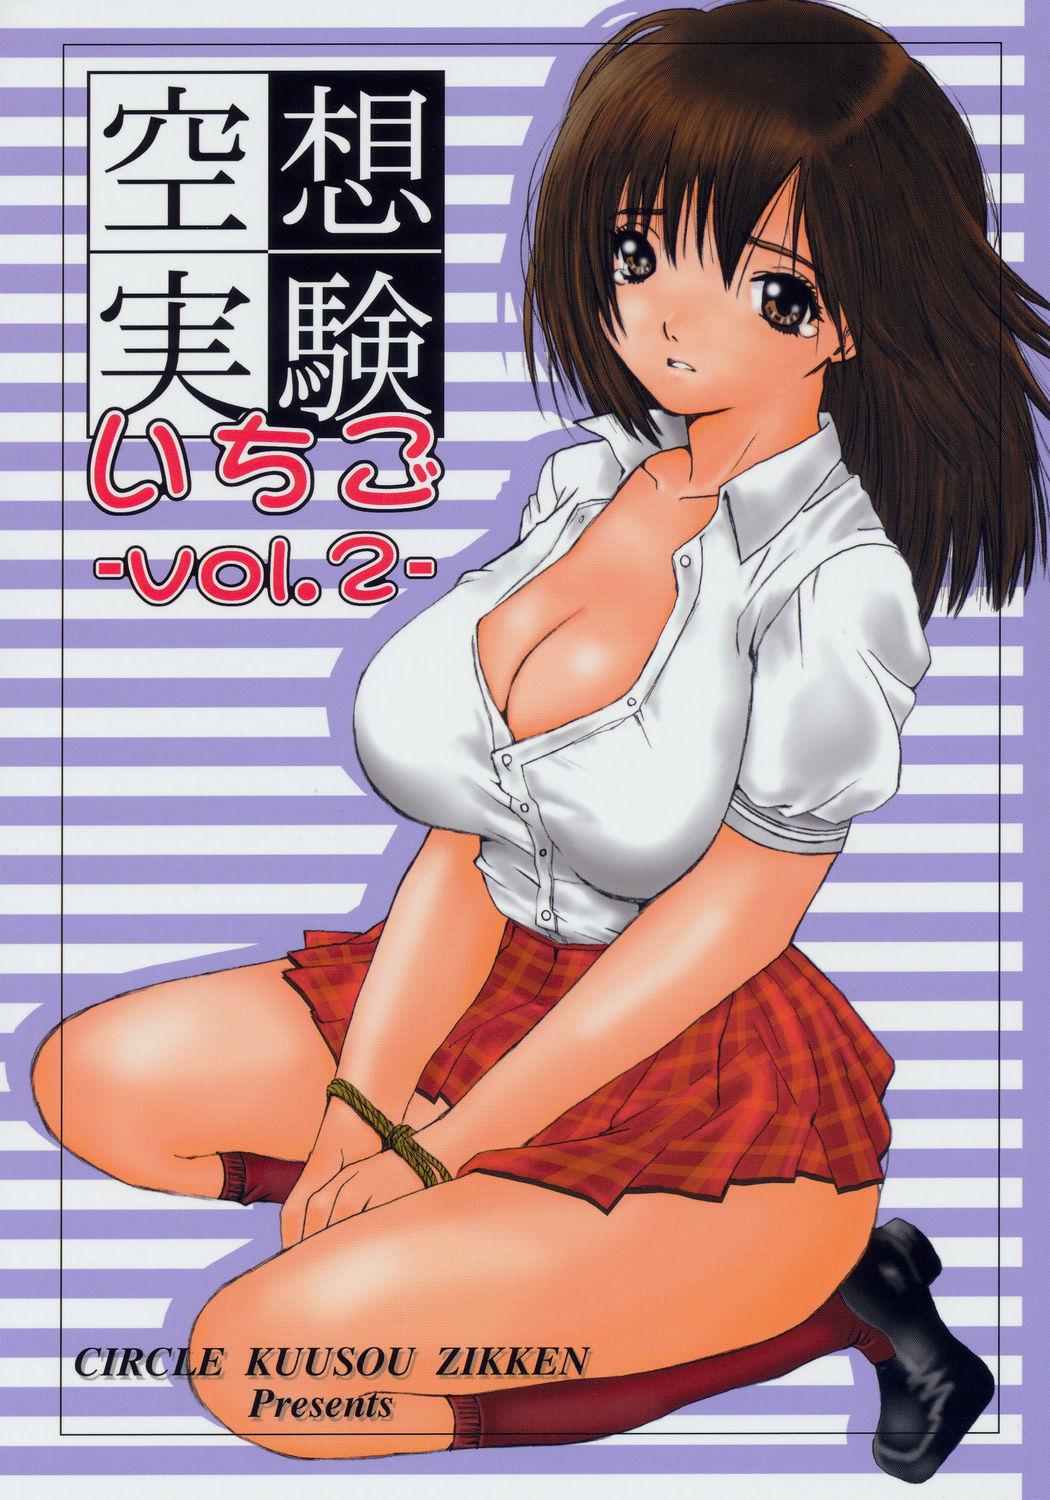 Dirty Kuusou Zikken Ichigo Vol.2 - Ichigo 100 Compilation - Picture 1